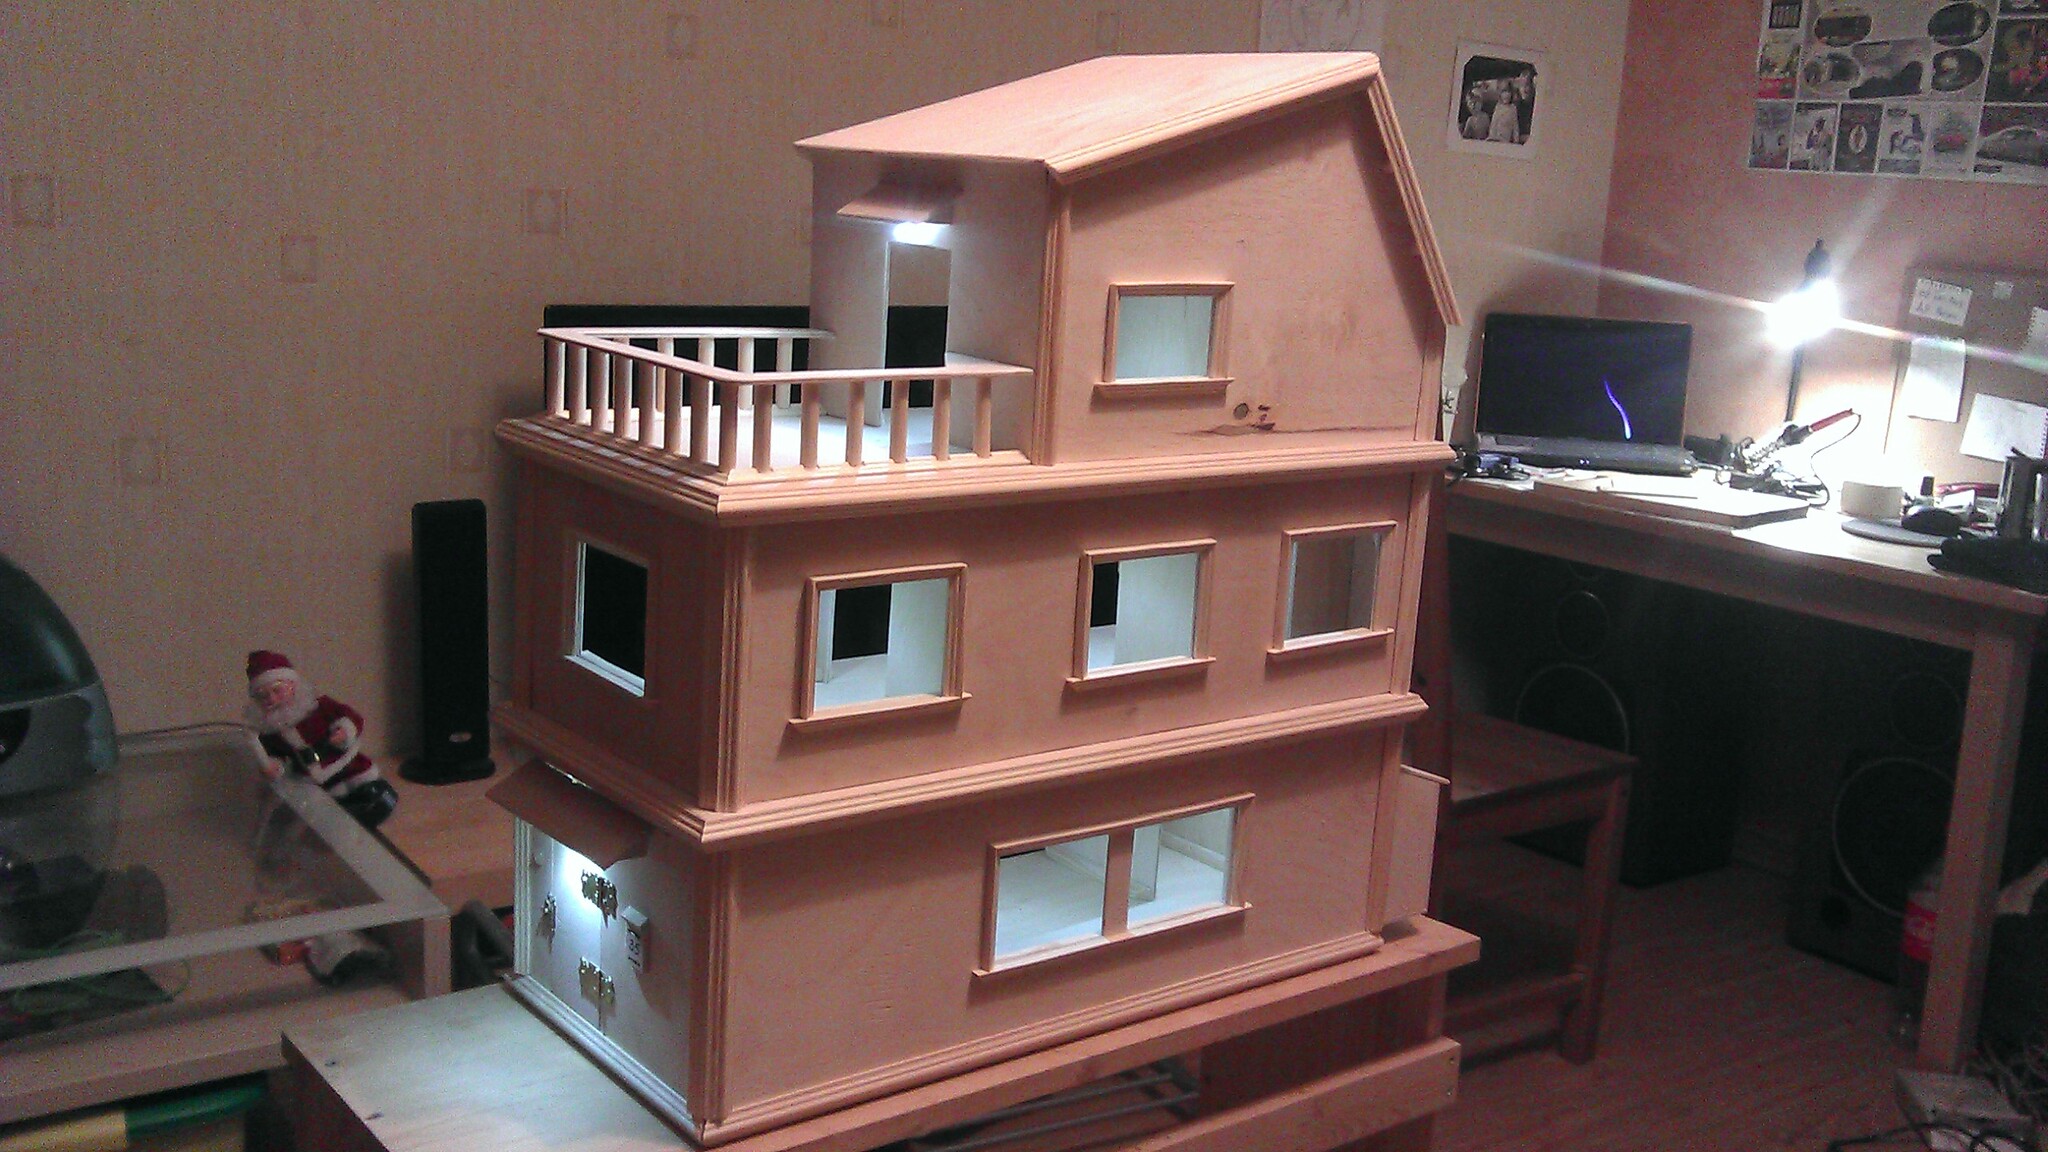 Кукольный дом из картона